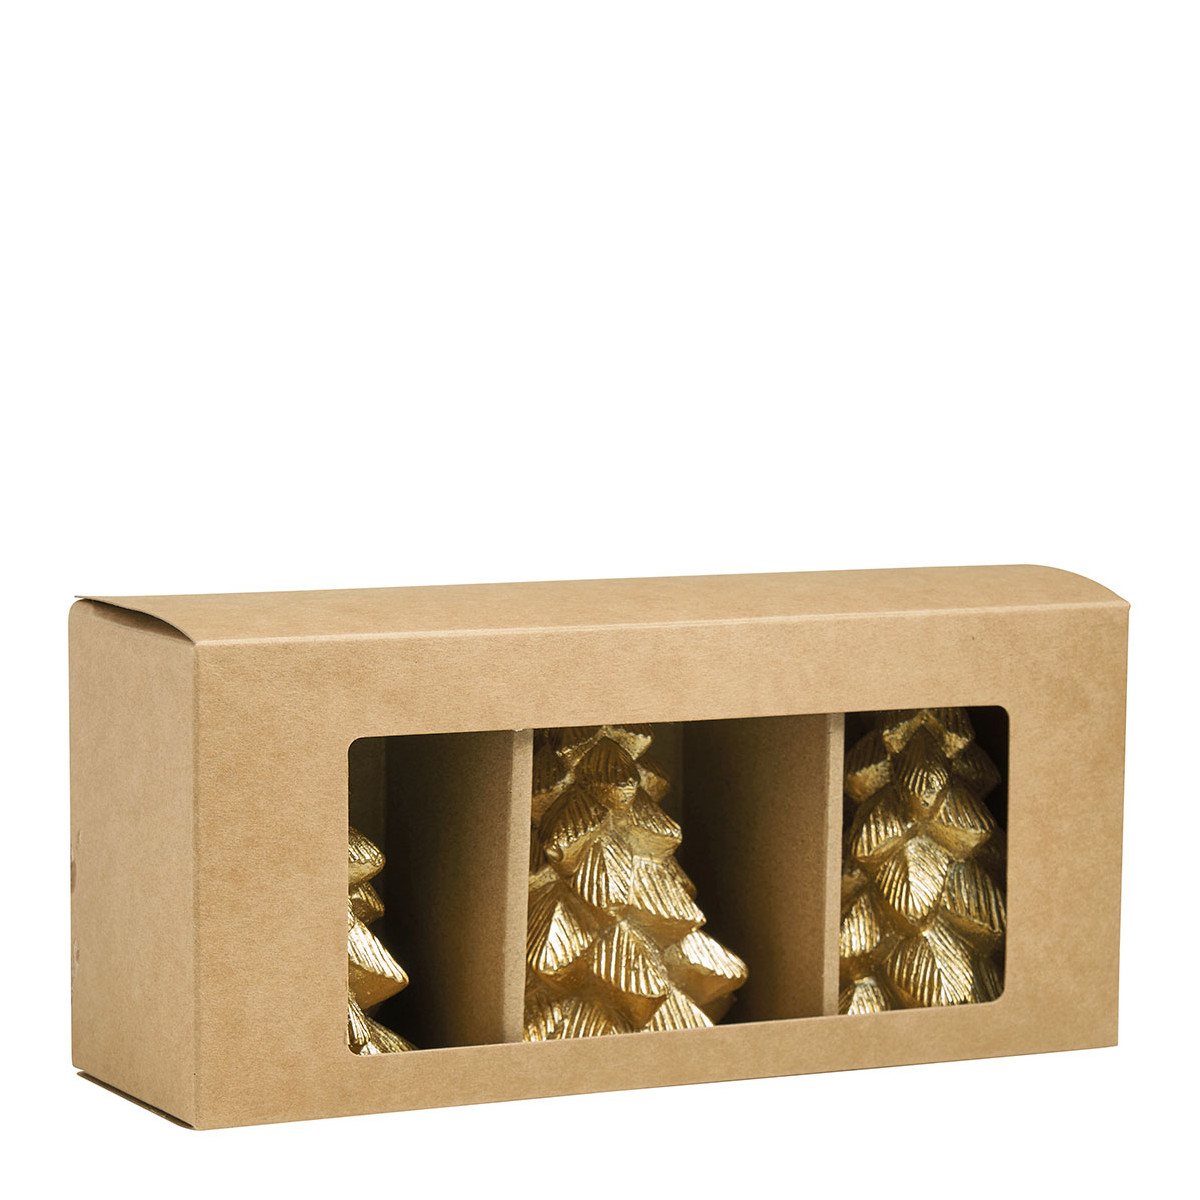 Bougie Noël Blanche Sur Planches Rustiques Bois Décoration Avec Éléments  image libre de droit par 02irina © #407850798